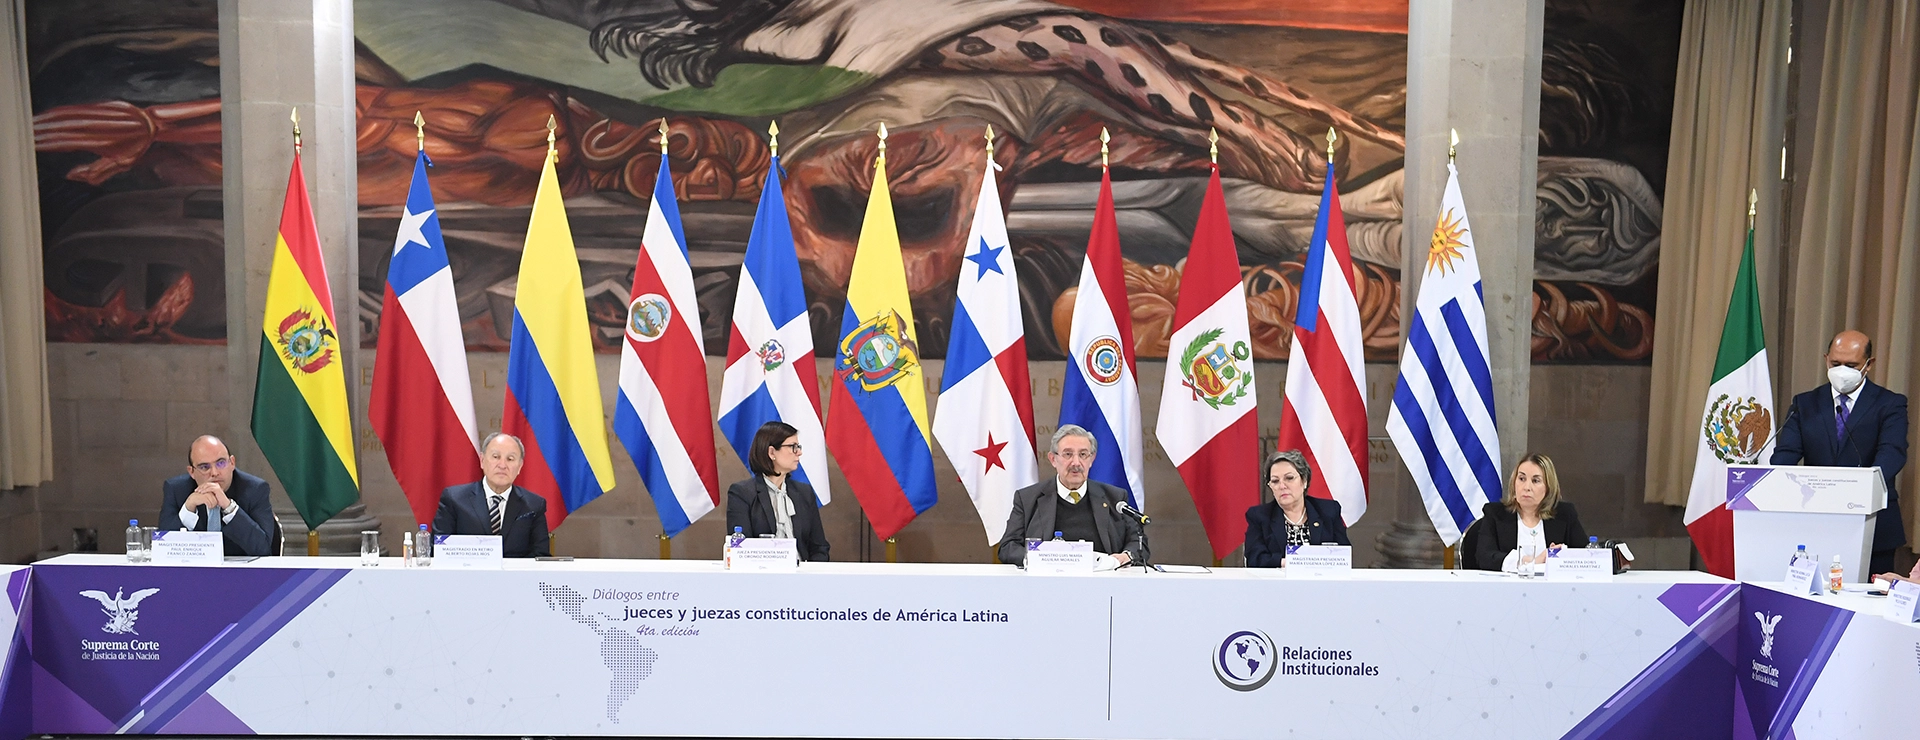 La Jueza Presidenta Oronoz Rodríguez participó en el Diálogo 5 “Derechos Laborales y la Seguridad Social”.